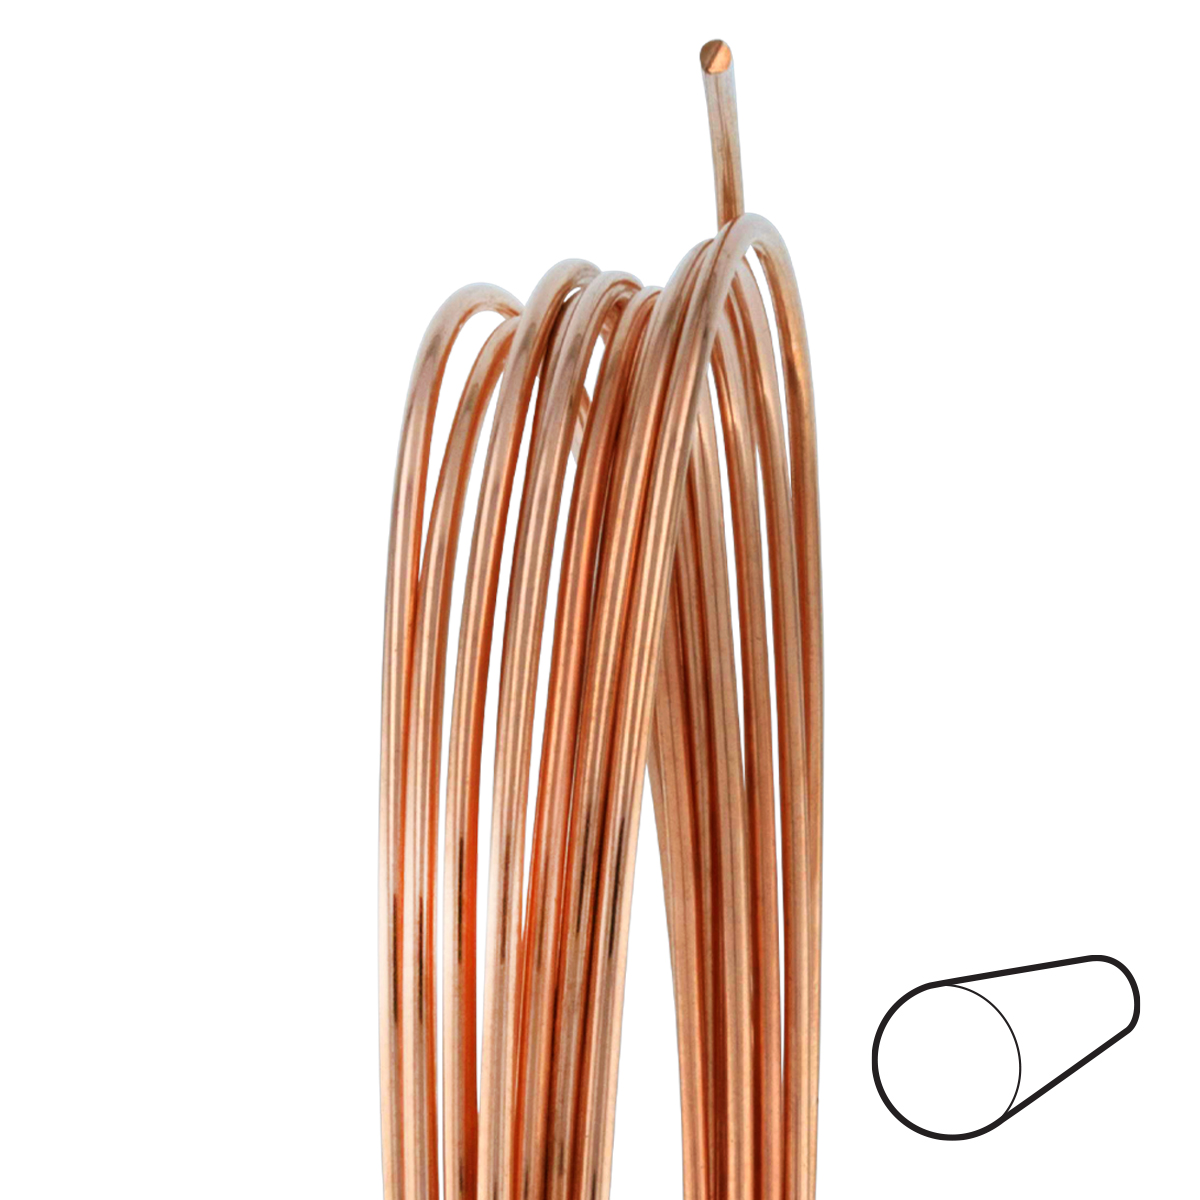 8 Gauge Round Dead Soft Copper Wire: Wire Jewelry, Wire Wrap Tutorials